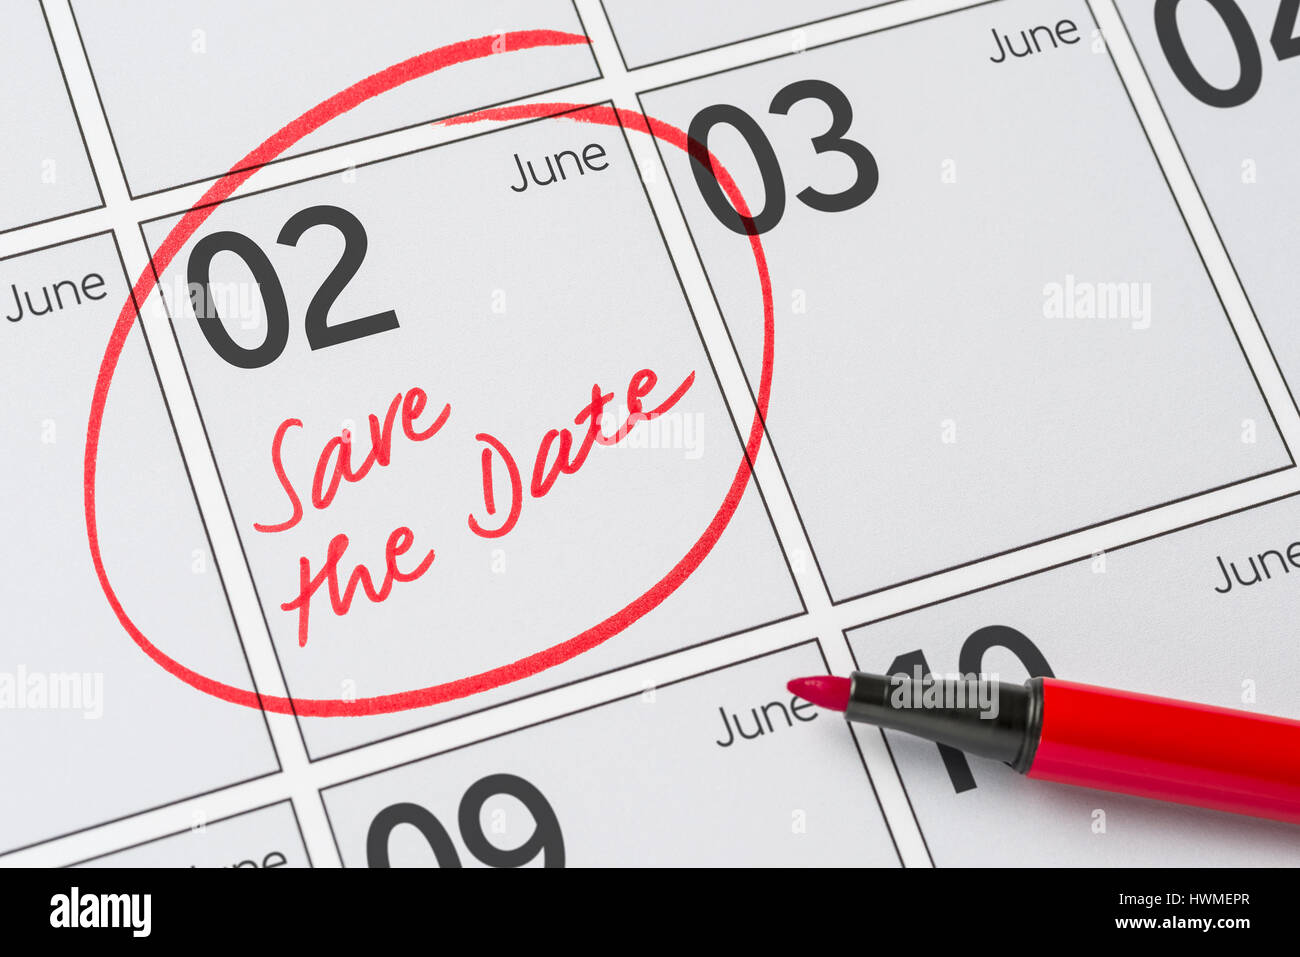 Enregistrer la date inscrite sur un calendrier - juin 02 Banque D'Images